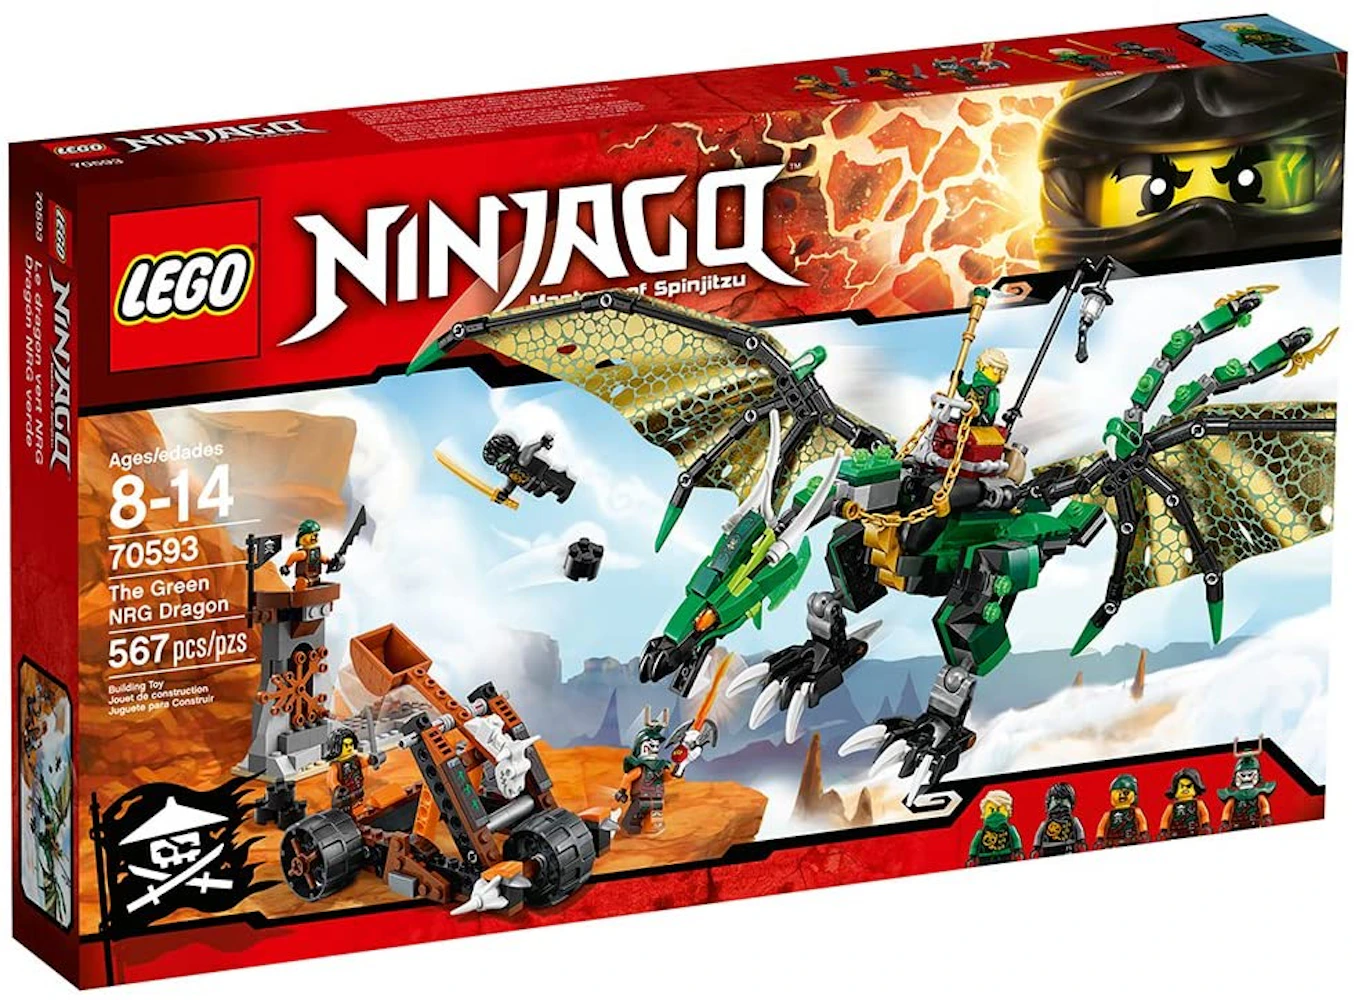 LEGO Ninjago Overlord Dragon Set 71742 - GB